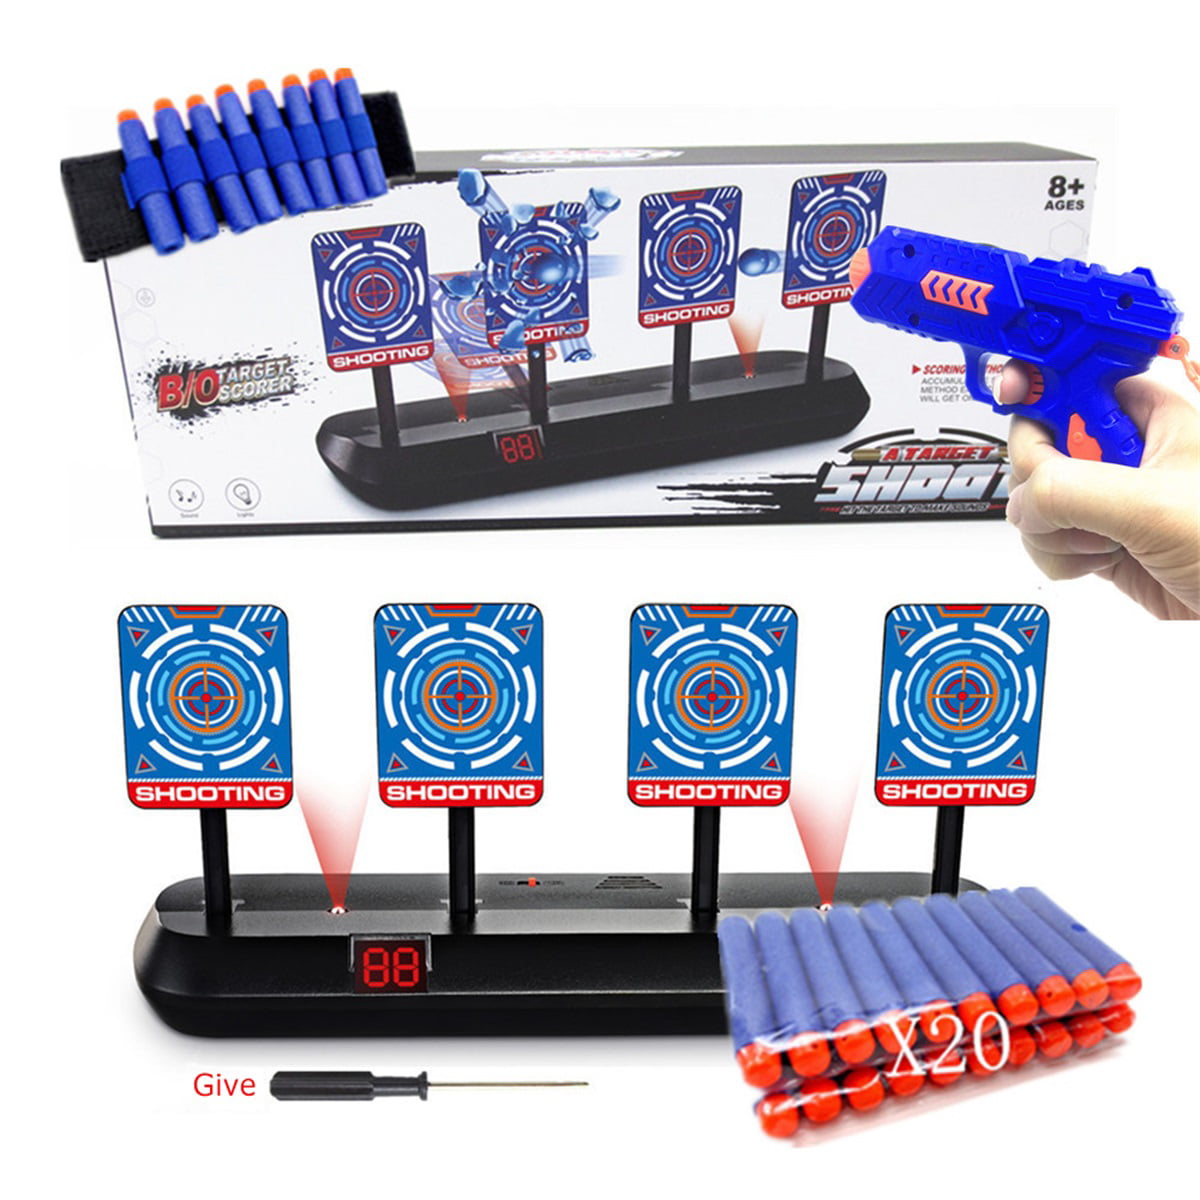 1x Electric Scoring Auto Reset Shooting Digital Target For Gun Toy Kids Gift Neu 